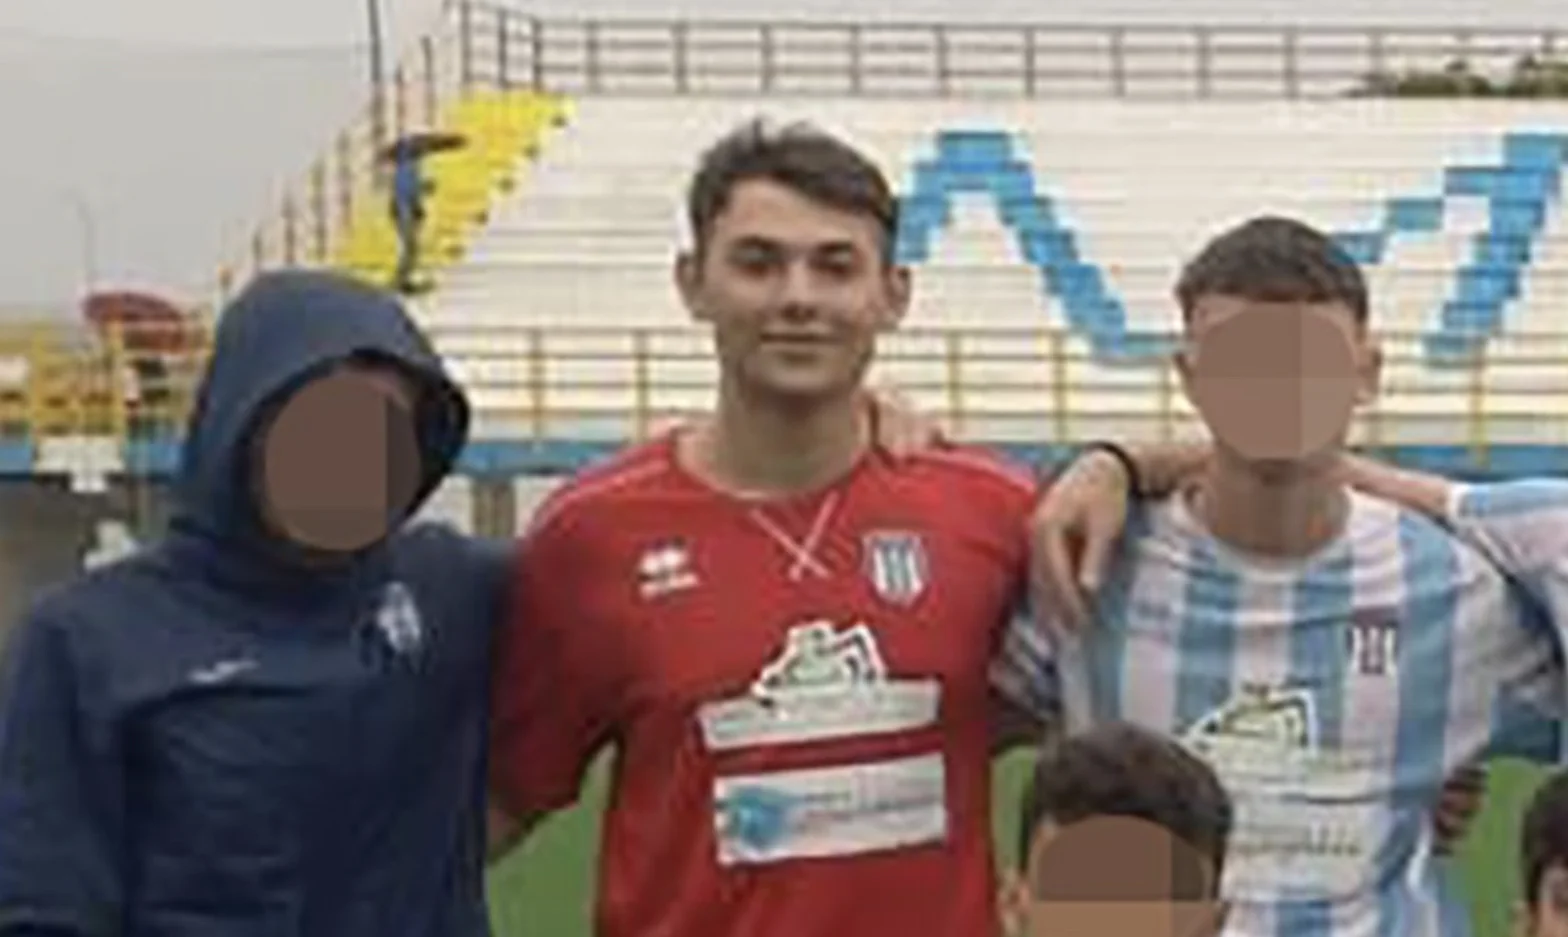 Il portiere diciassettenne della Virtus Mola, Matteo Capelluti, è tragicamente deceduto a seguito di un incidente stradale. Il mondo del calcio pugliese esprime profondo cordoglio.